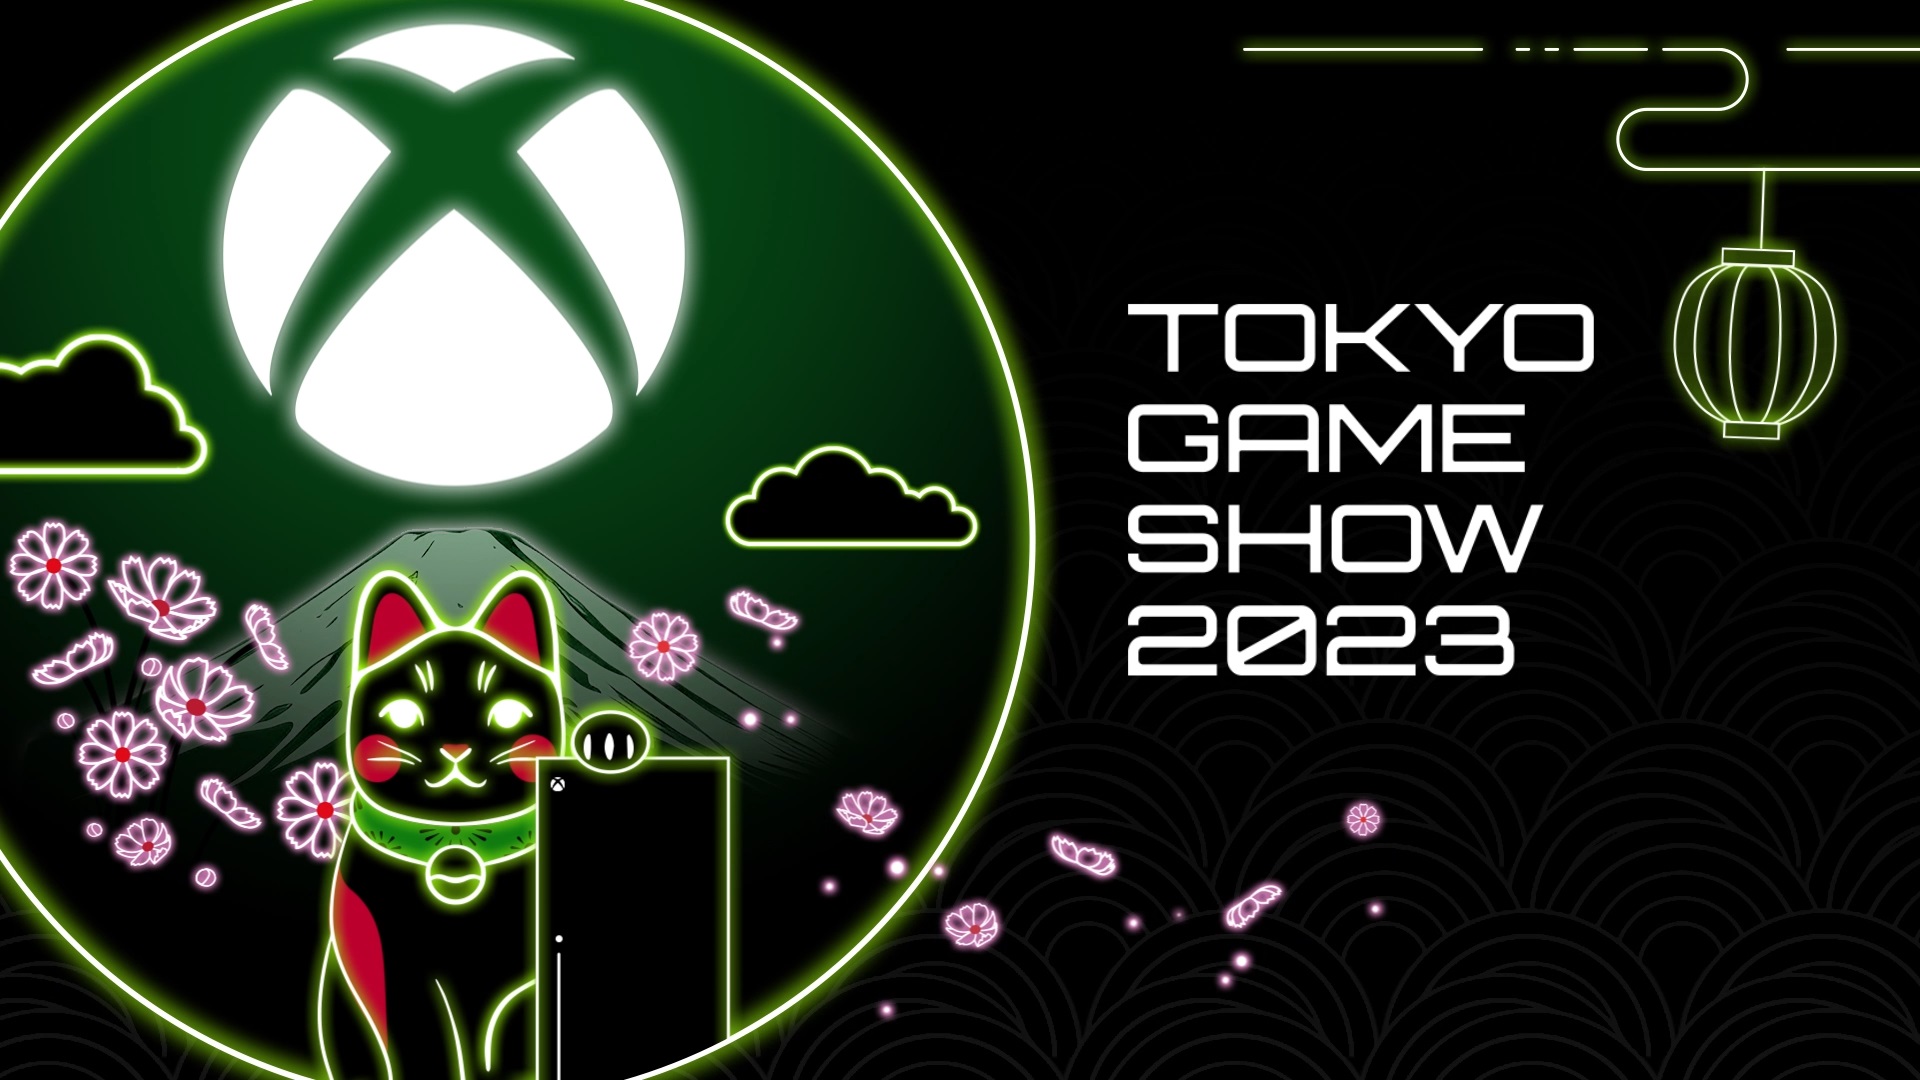 Xbox东京电玩展曲播企图 供应亚洲创做者的游戏疑息